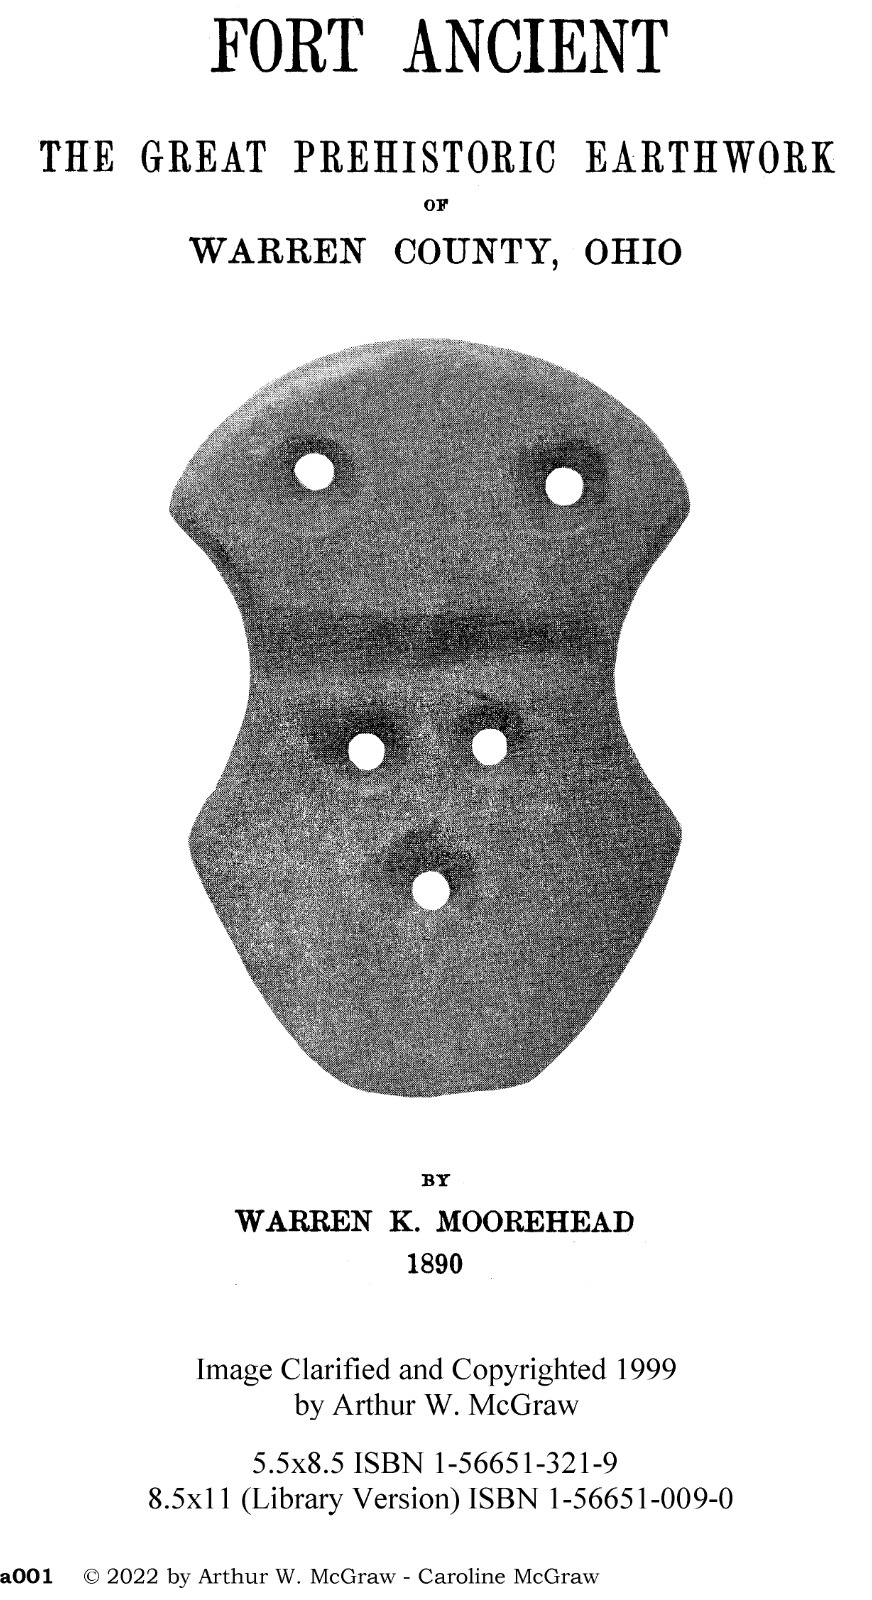 Fort Ancient the Great Prehistoric Earthwork - 1890 - Warren K. Moorehead - pdf